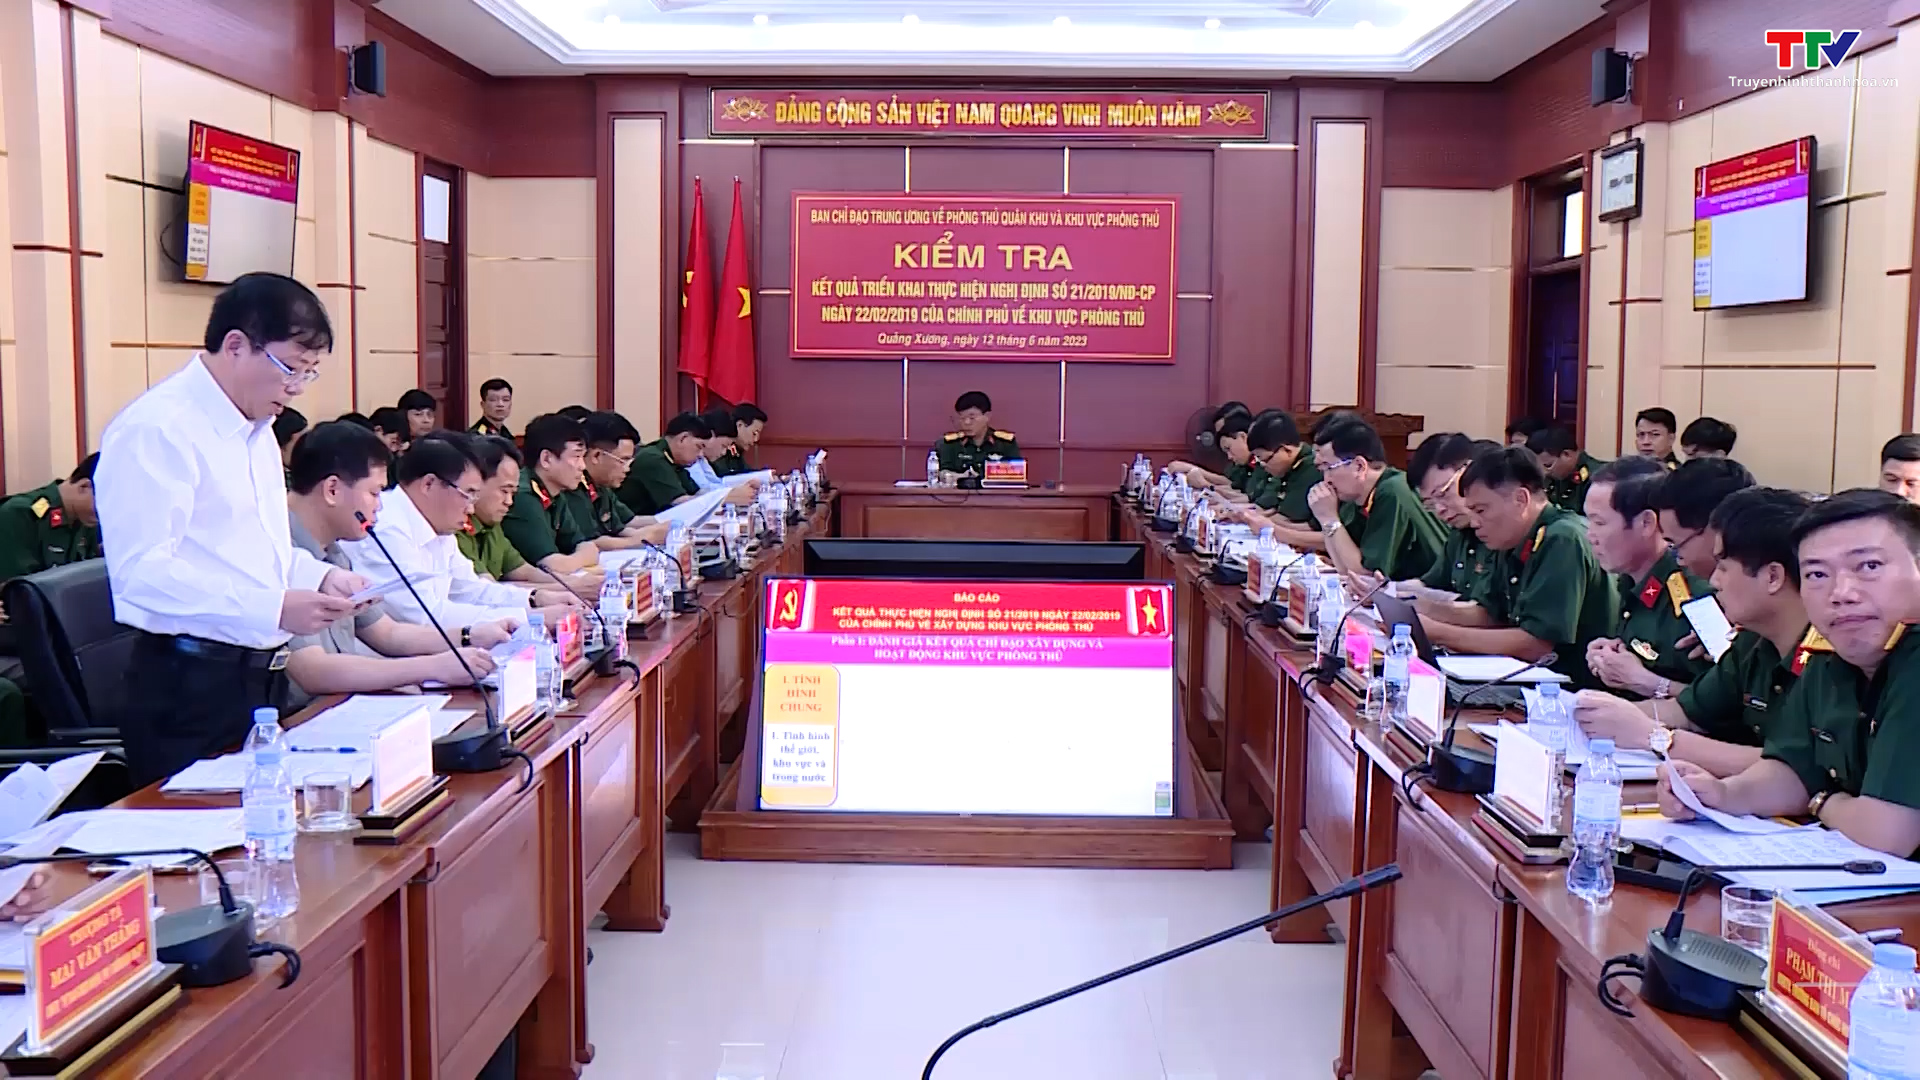 Đoàn kiểm tra của Bộ Quốc phòng kiểm tra việc xây dựng Khu vực phòng thủ tại Thanh Hóa - Ảnh 2.